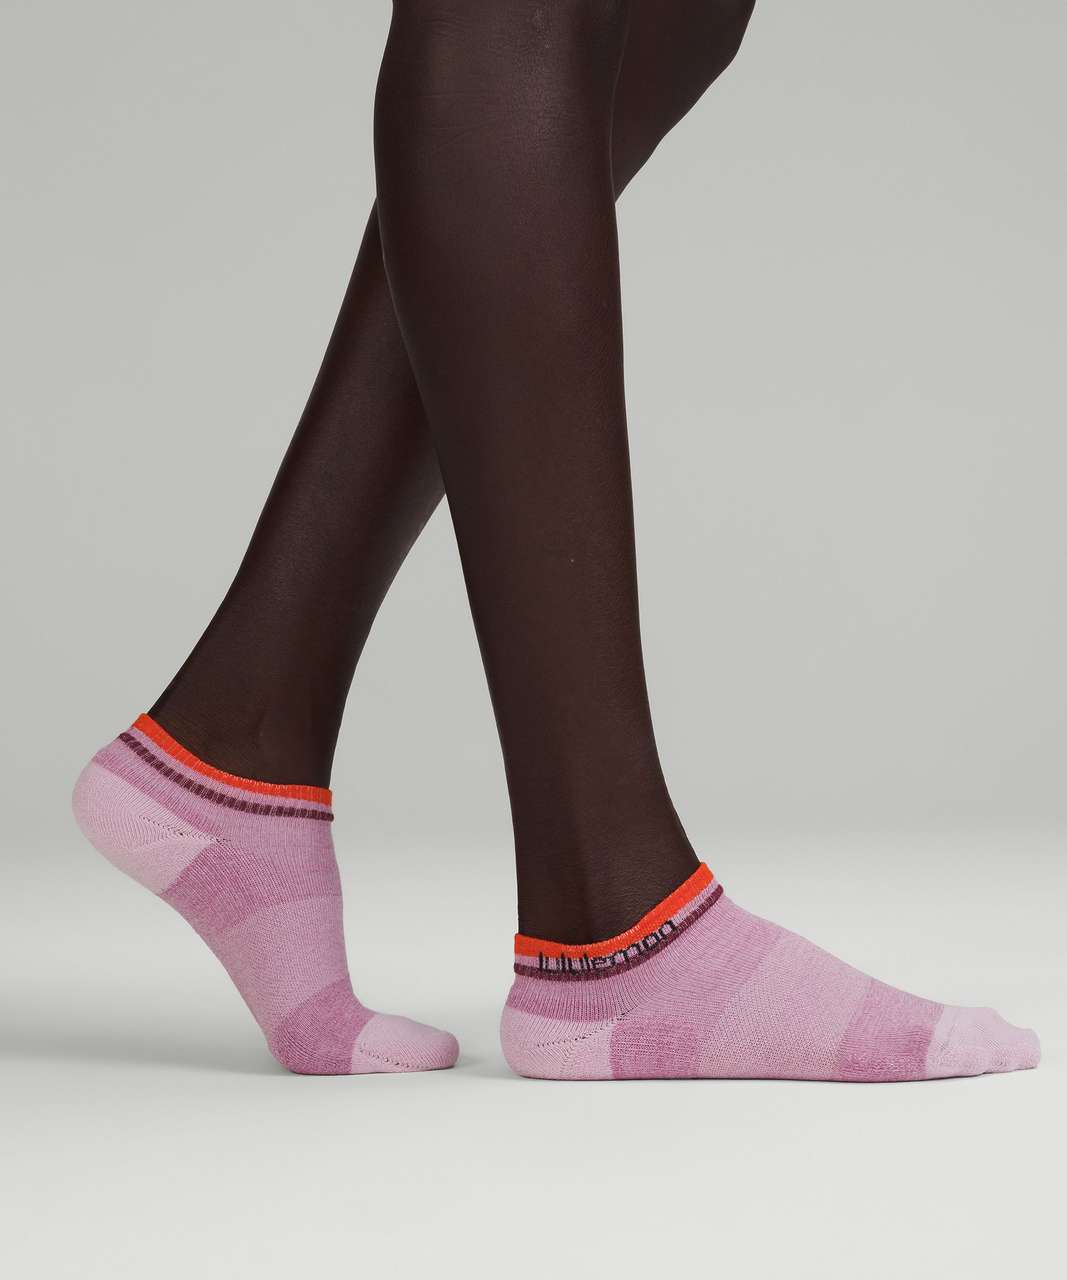 Lululemon Womens Daily Stride Comfort Ankle Sock *3 Pack - Velvet